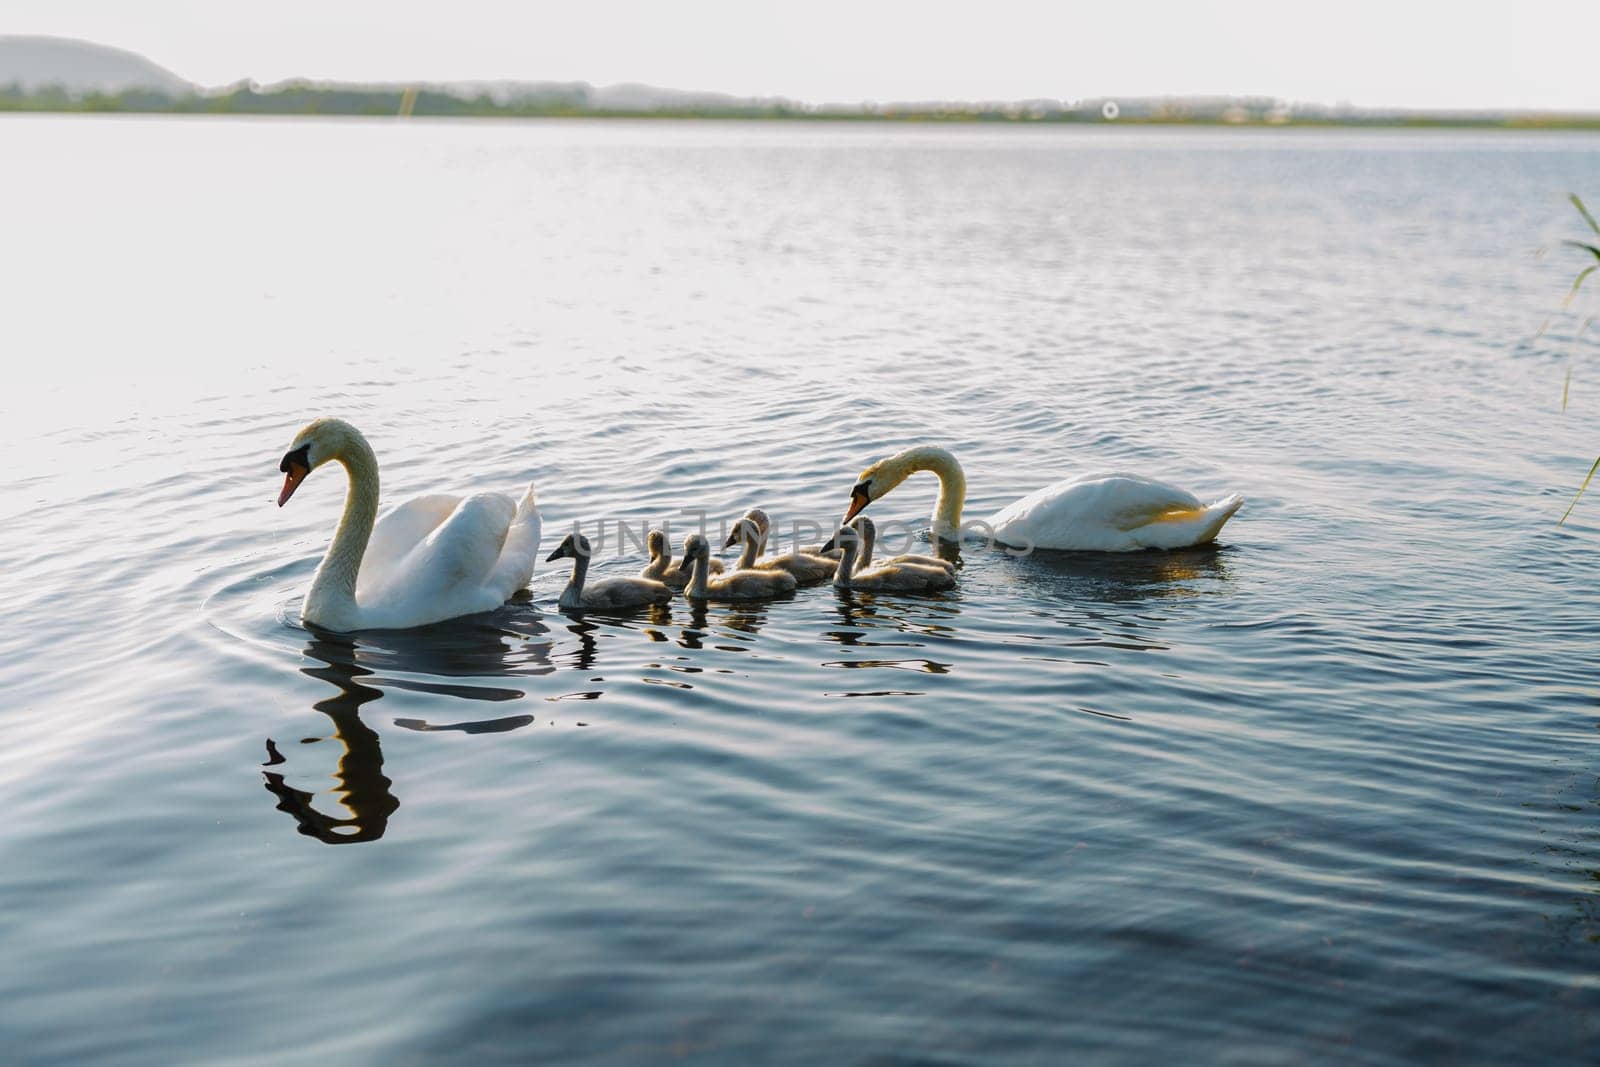 Swans family floating on the lake at sunset. by AliaksandrFilimonau